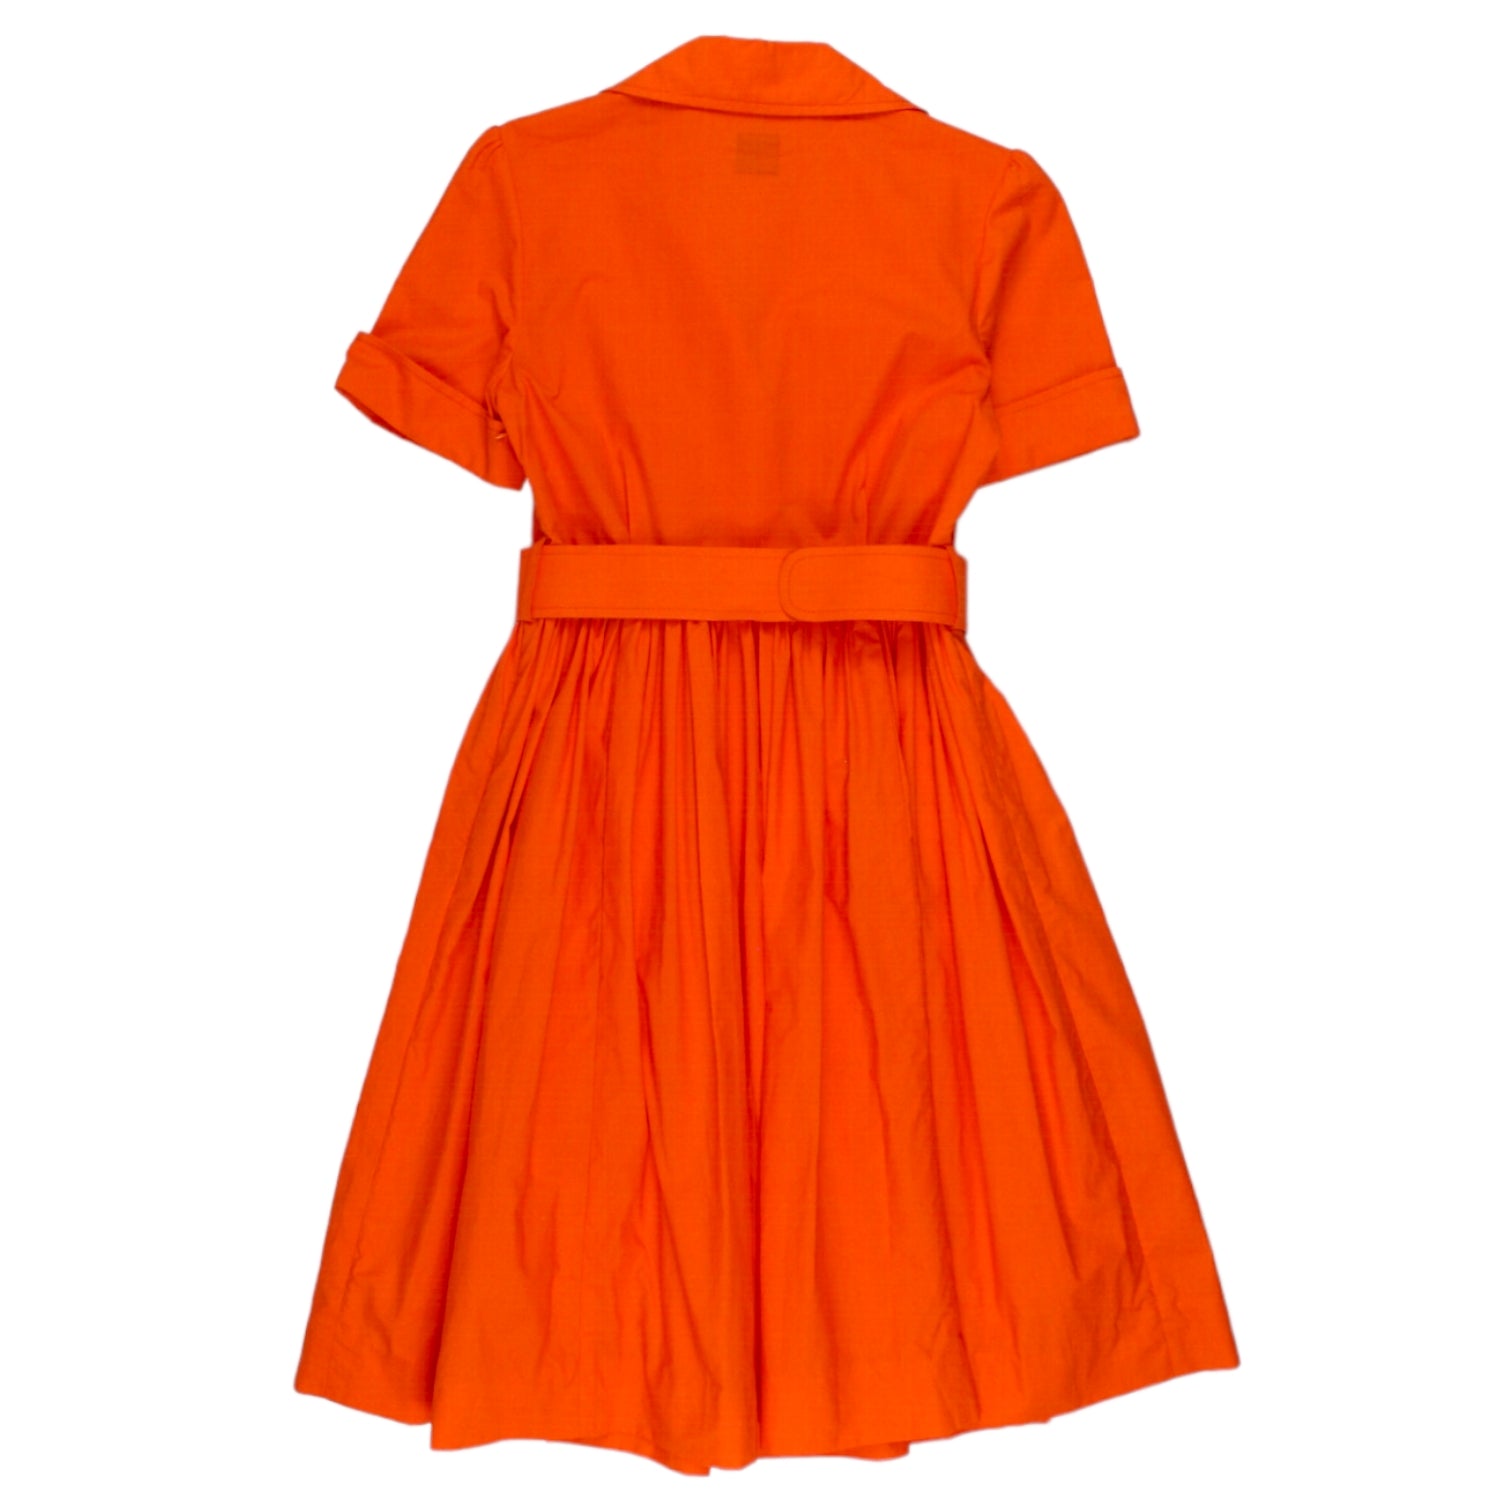 Orla Kiely Orange Belted Shirtdress